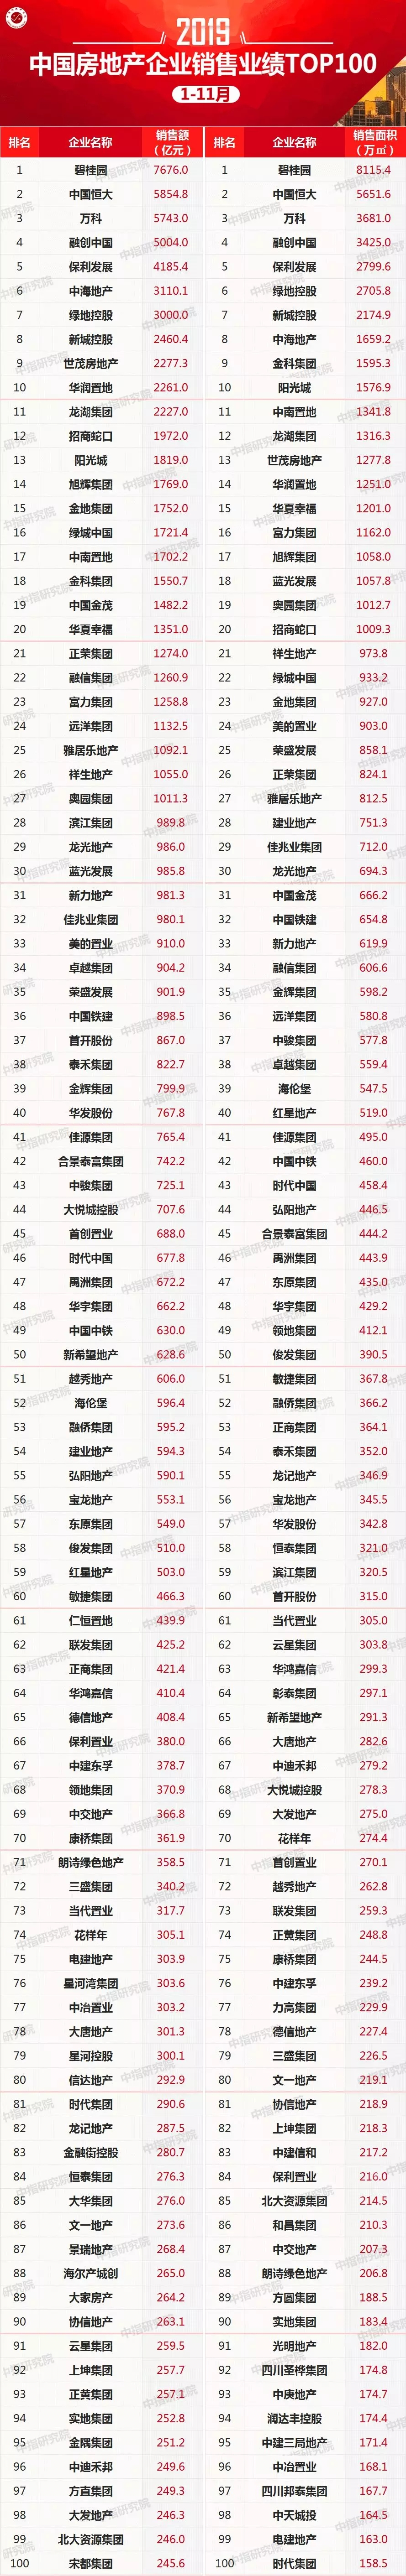 2019年1-11月中国房地产企业销售业绩100